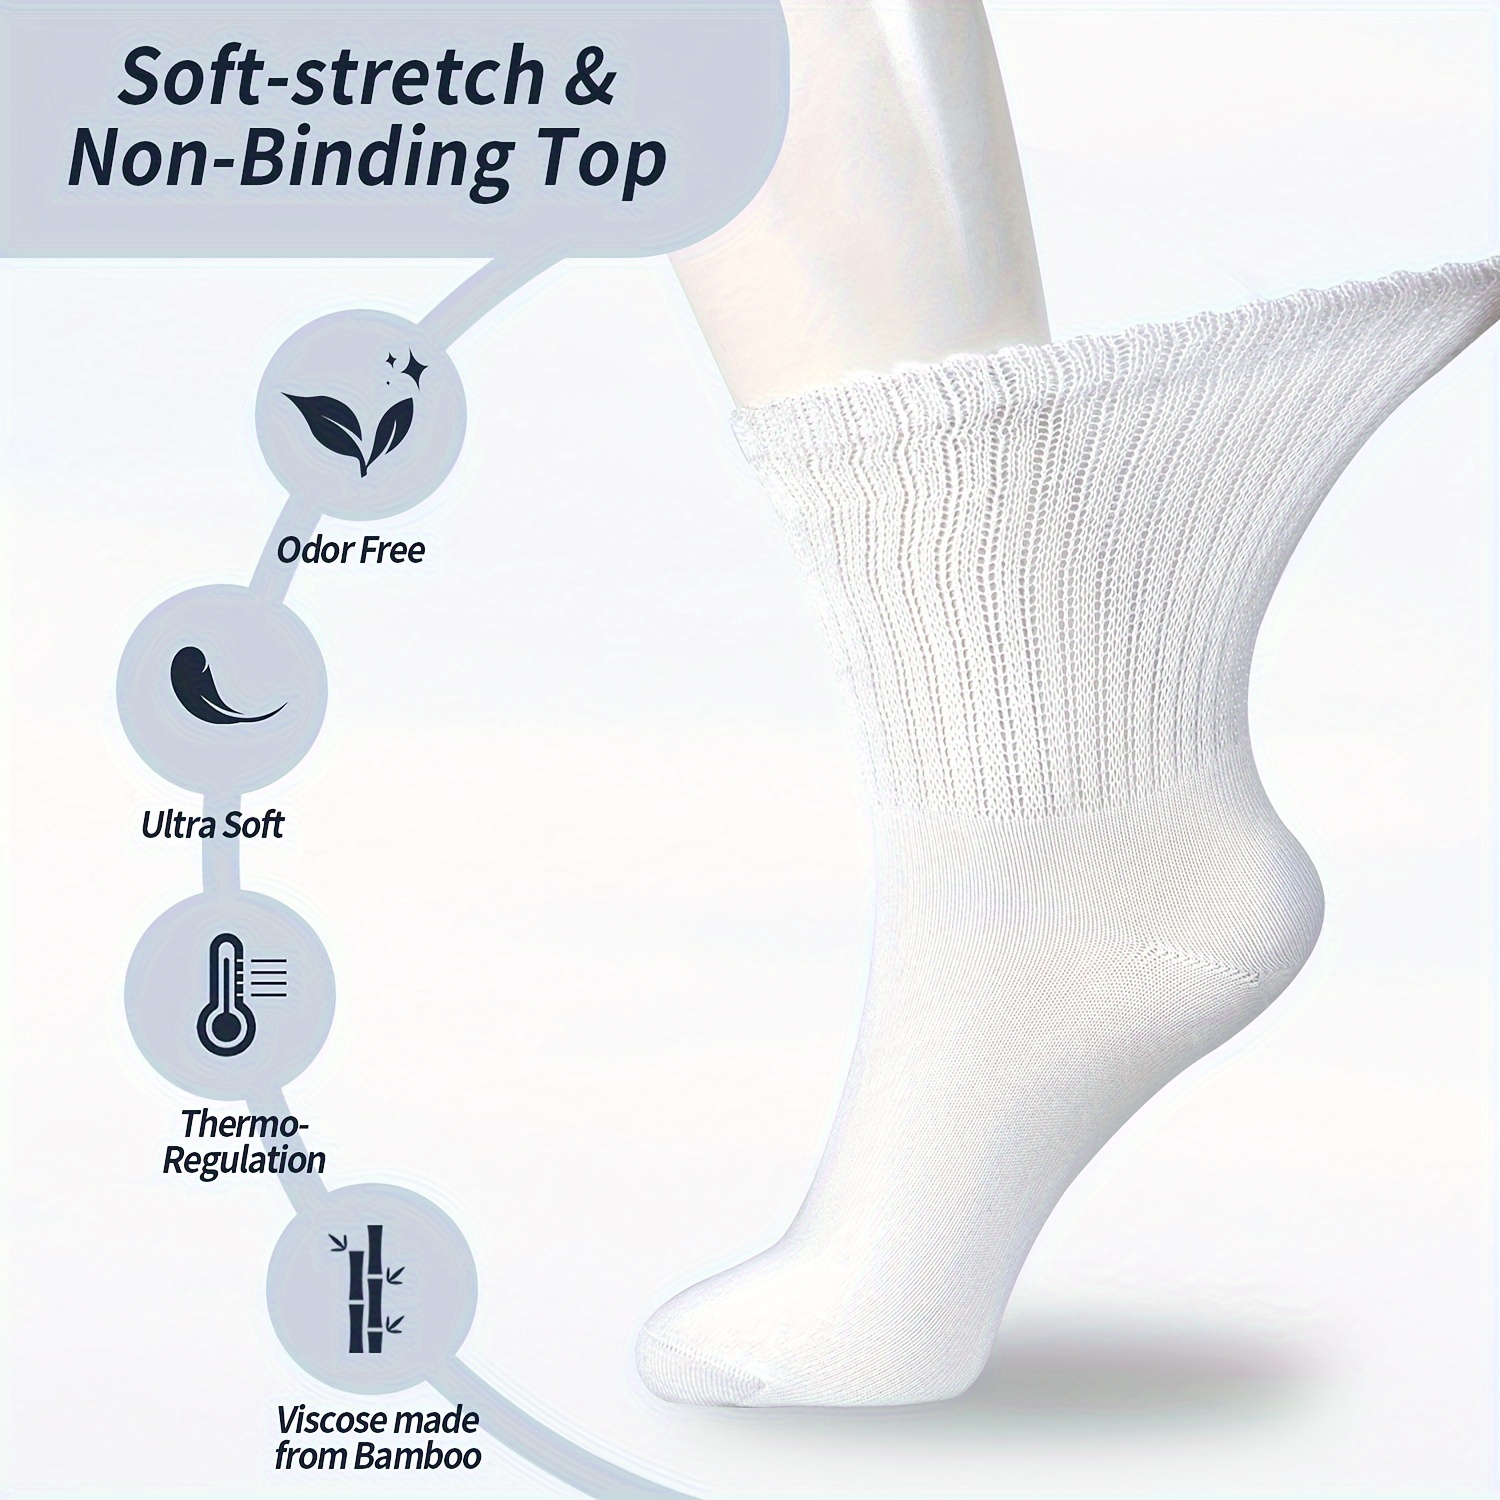 Comprar 4 pares de calcetines tobilleros con letras de Color liso a la moda  para hombre, calcetines cortos transpirables desodorantes de malla elástica  de alta calidad para hombre